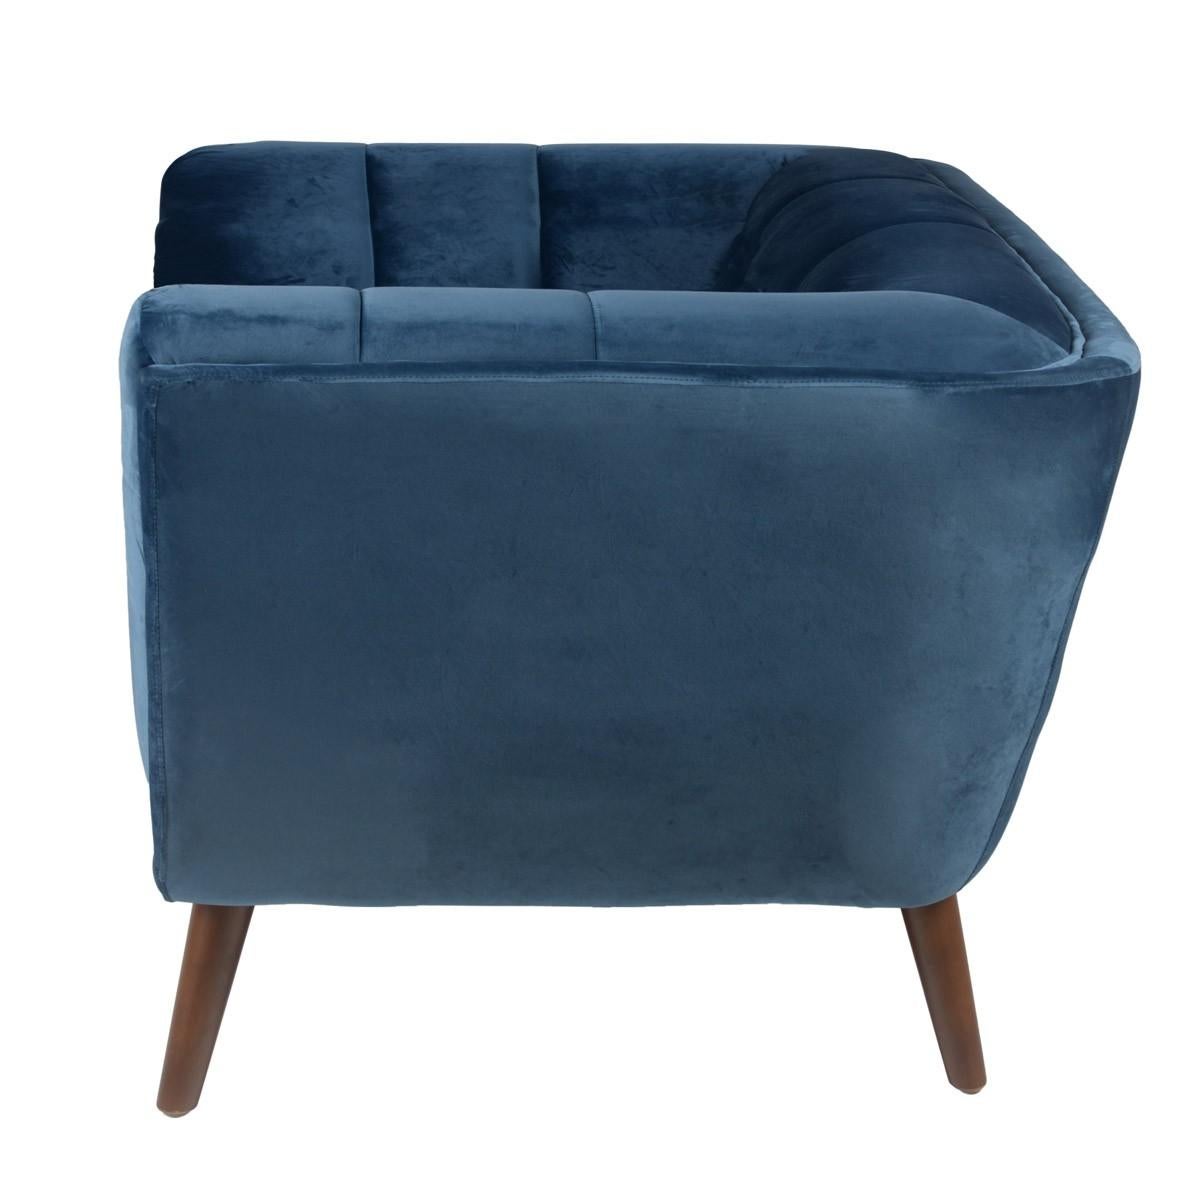 Post-Modern Blue Velvet And Wooden Feet Design Armchair For Sale